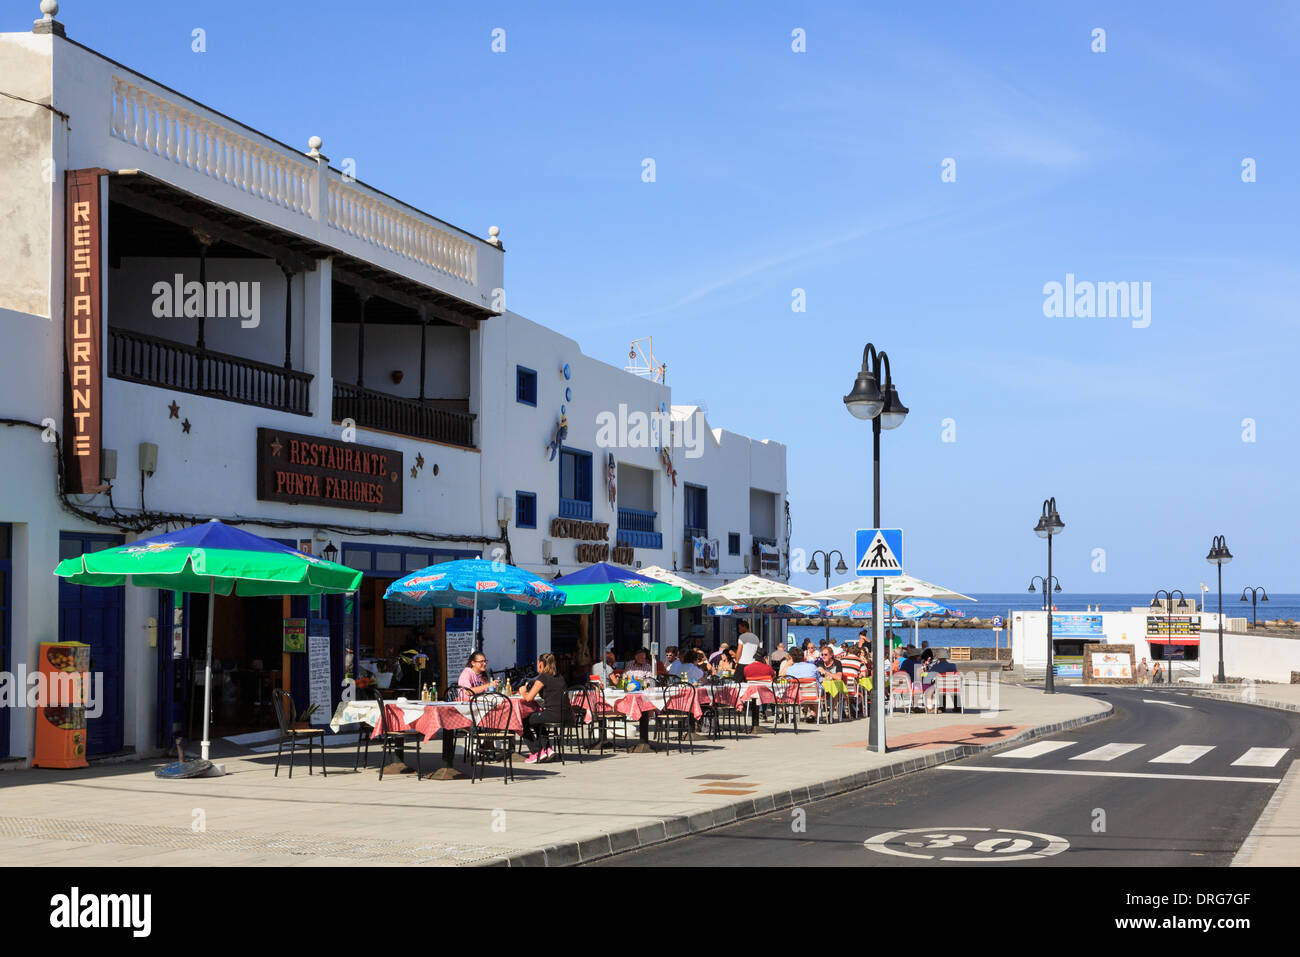 Sala da pranzo di persone al di fuori di un cafe' sul marciapiede in maggior parte nord del villaggio resort di Orzola, Lanzarote, Isole Canarie, Spagna Foto Stock